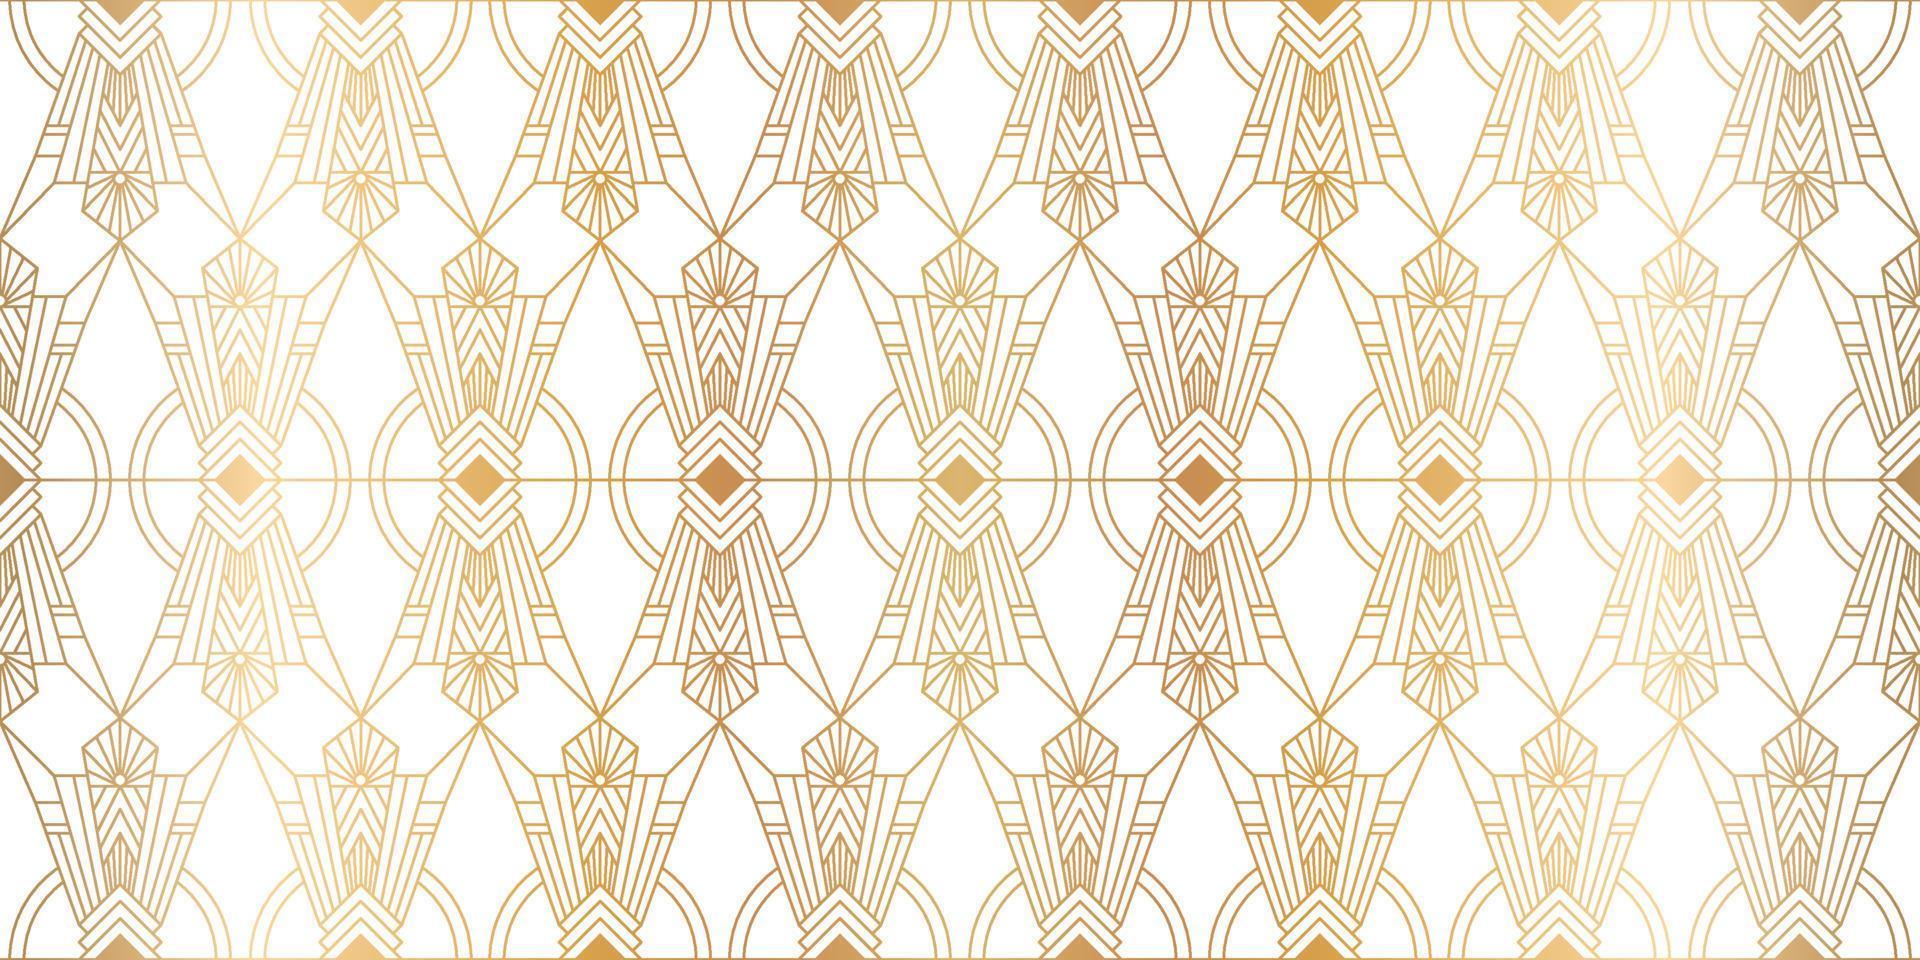 Luxus Art Deco Musterdesign Hintergrund Vektor. abstrakter eleganter jugendstil mit zarter goldener geometrischer linie vintage dekorativer minimalistischer texturstil. Design für Tapeten, Banner, Karten. vektor